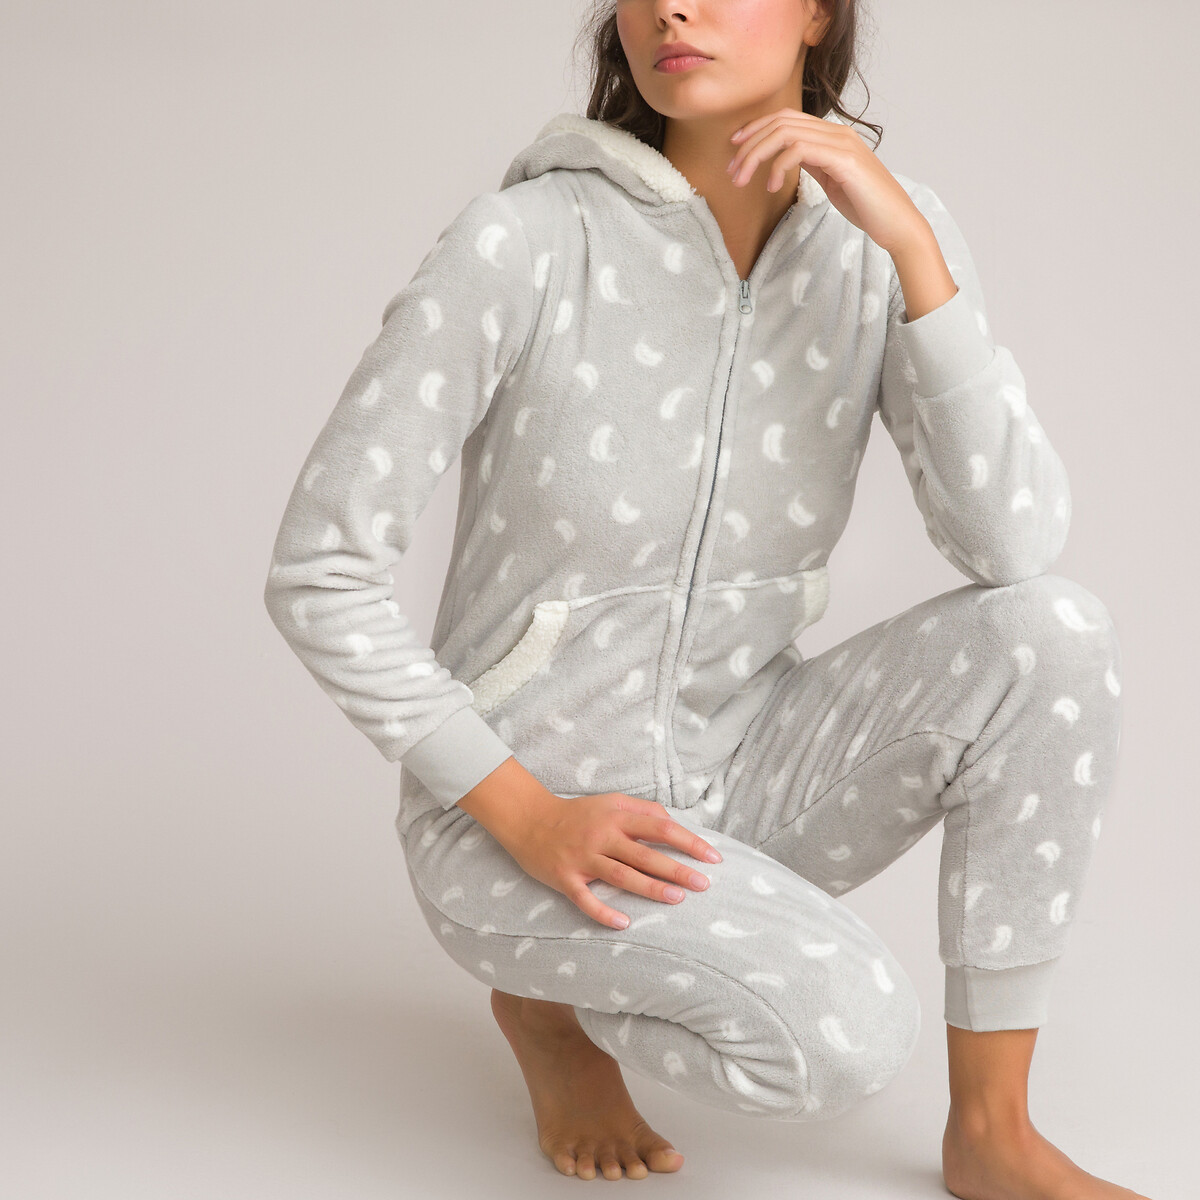 Купить Красивые Пижамы В Интернет Магазине